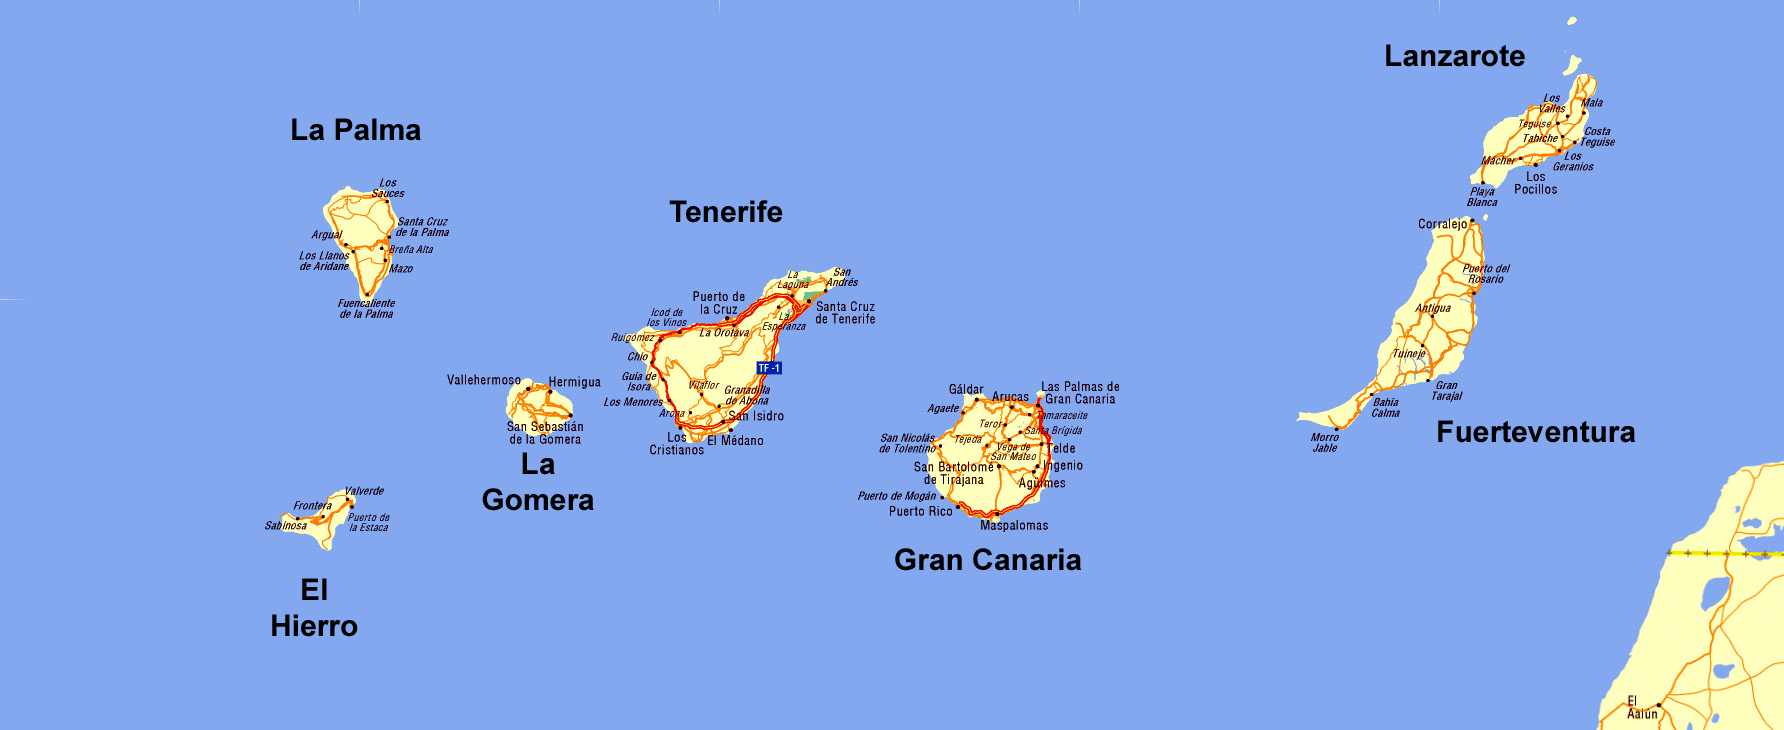 Канарские острова на карте мира, их особенности и отличия